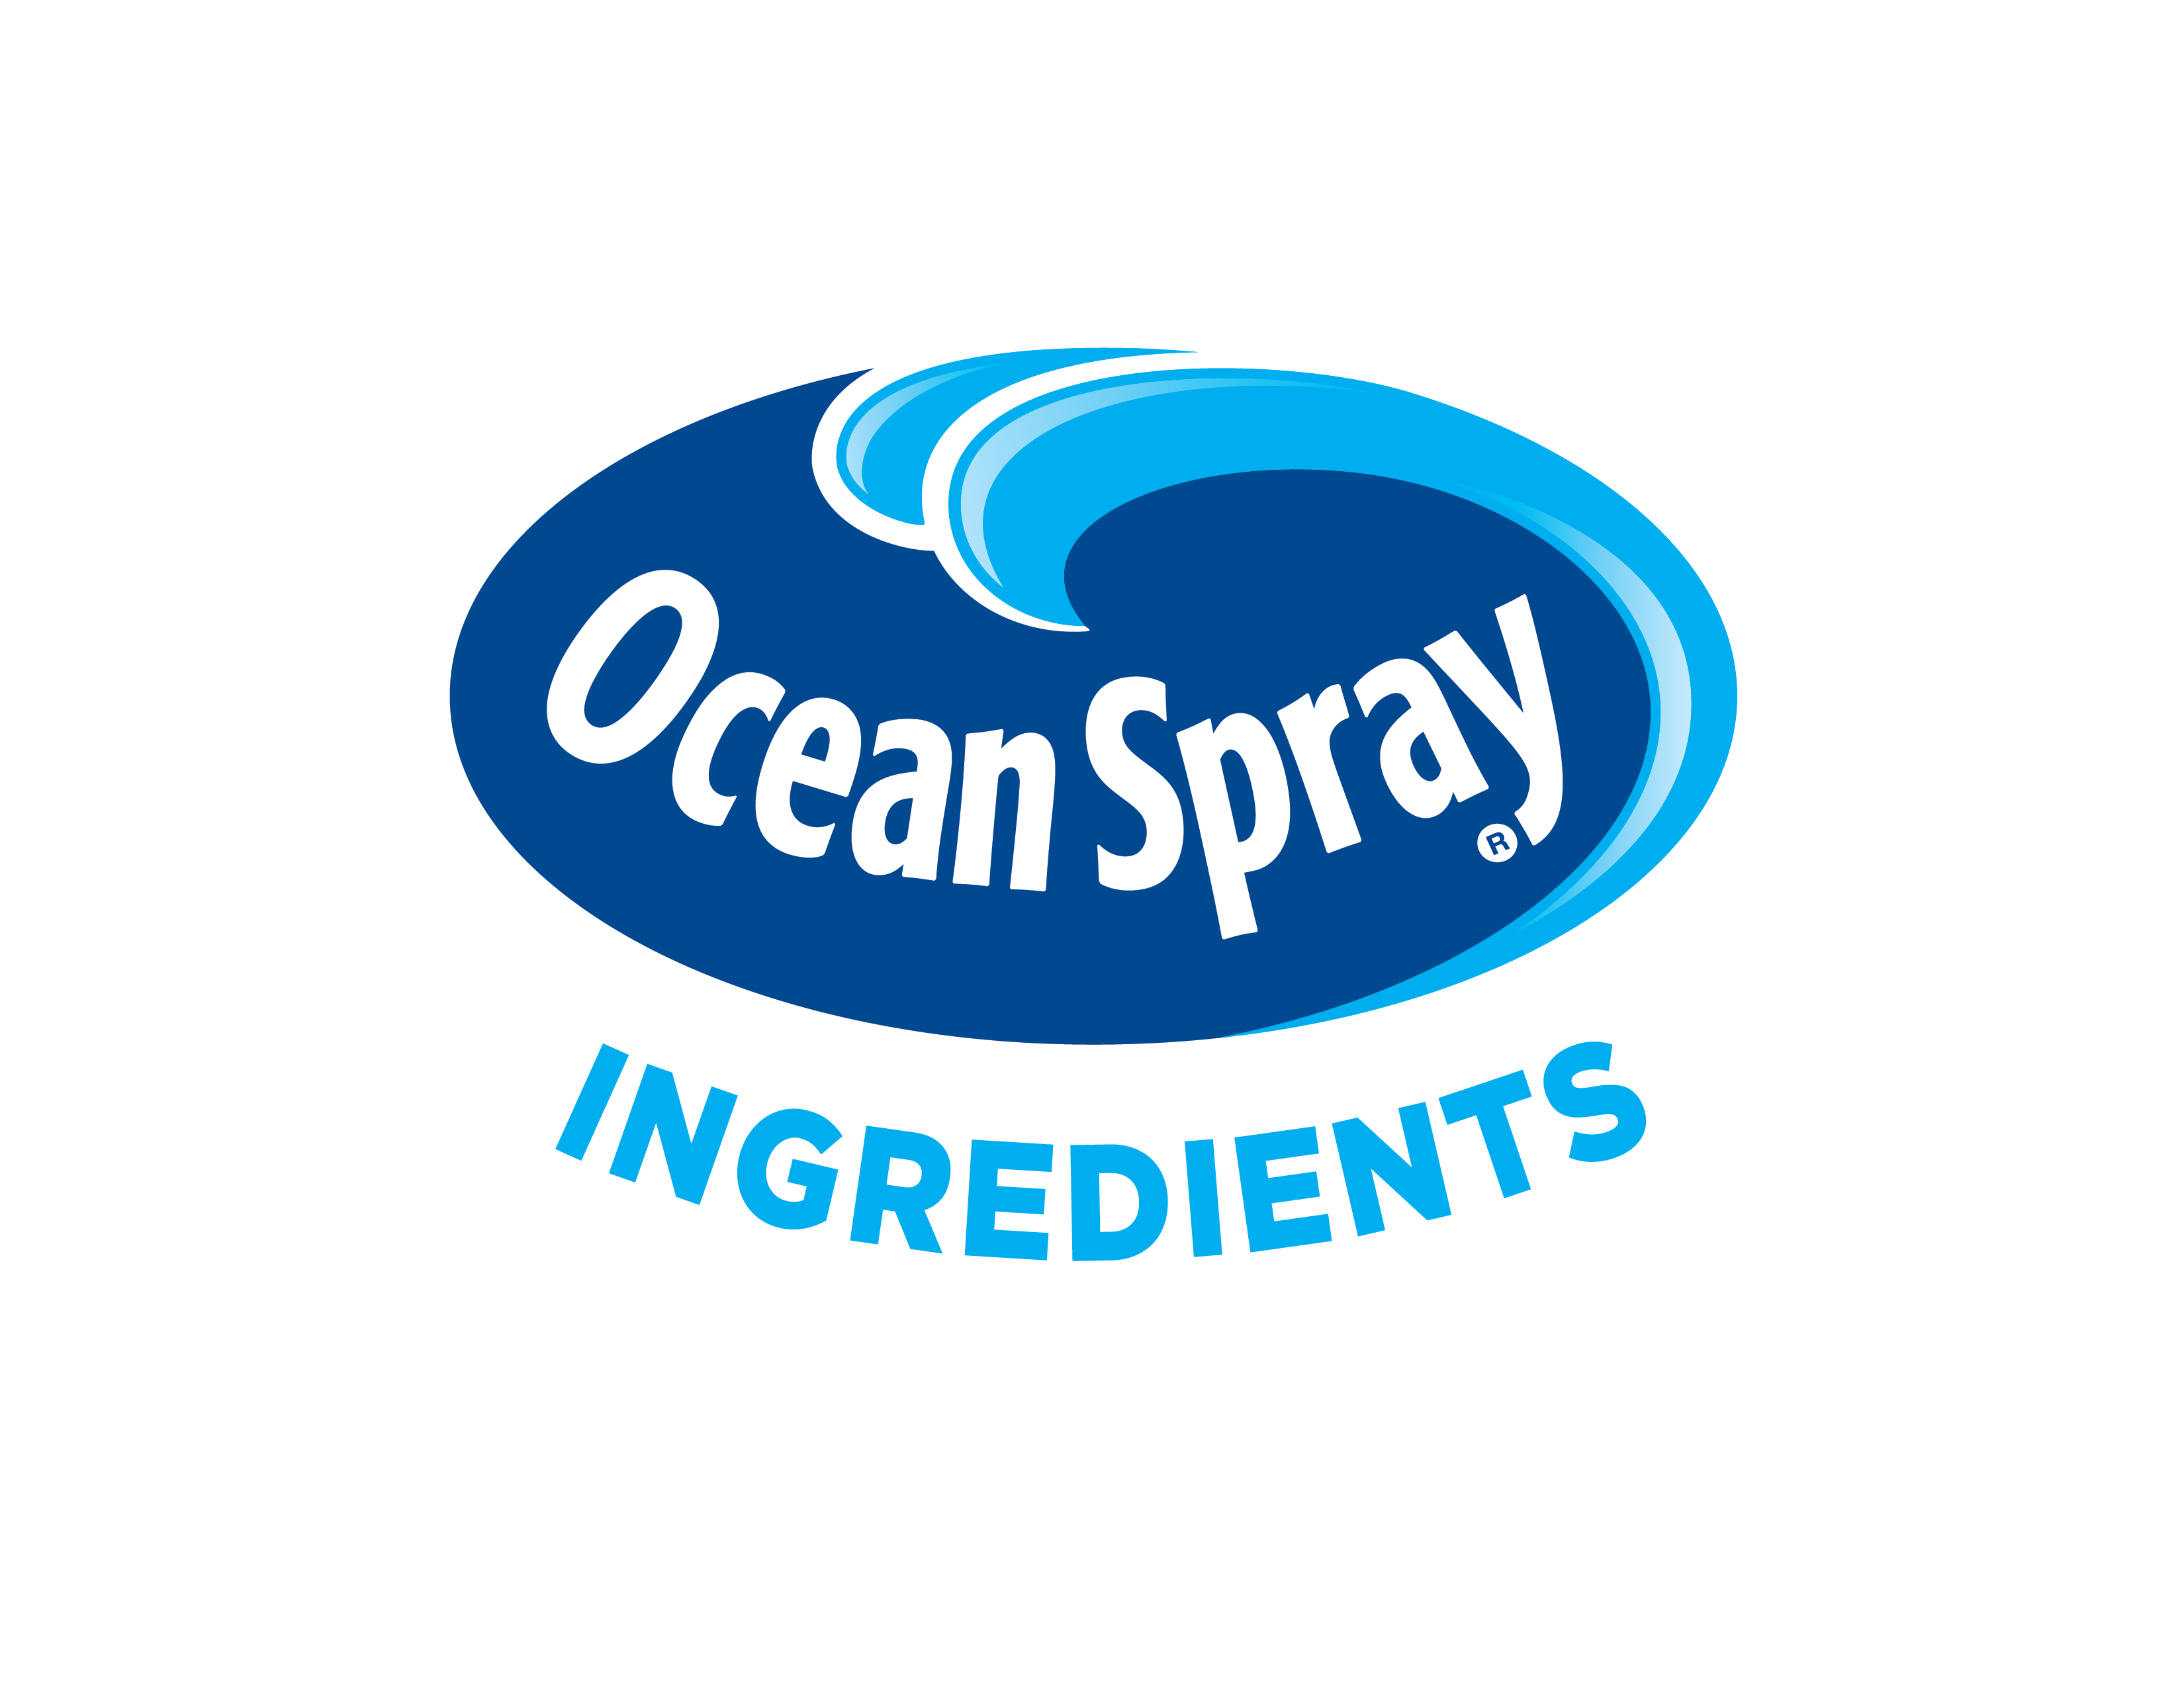 Ocean Spray Ingredients Logo